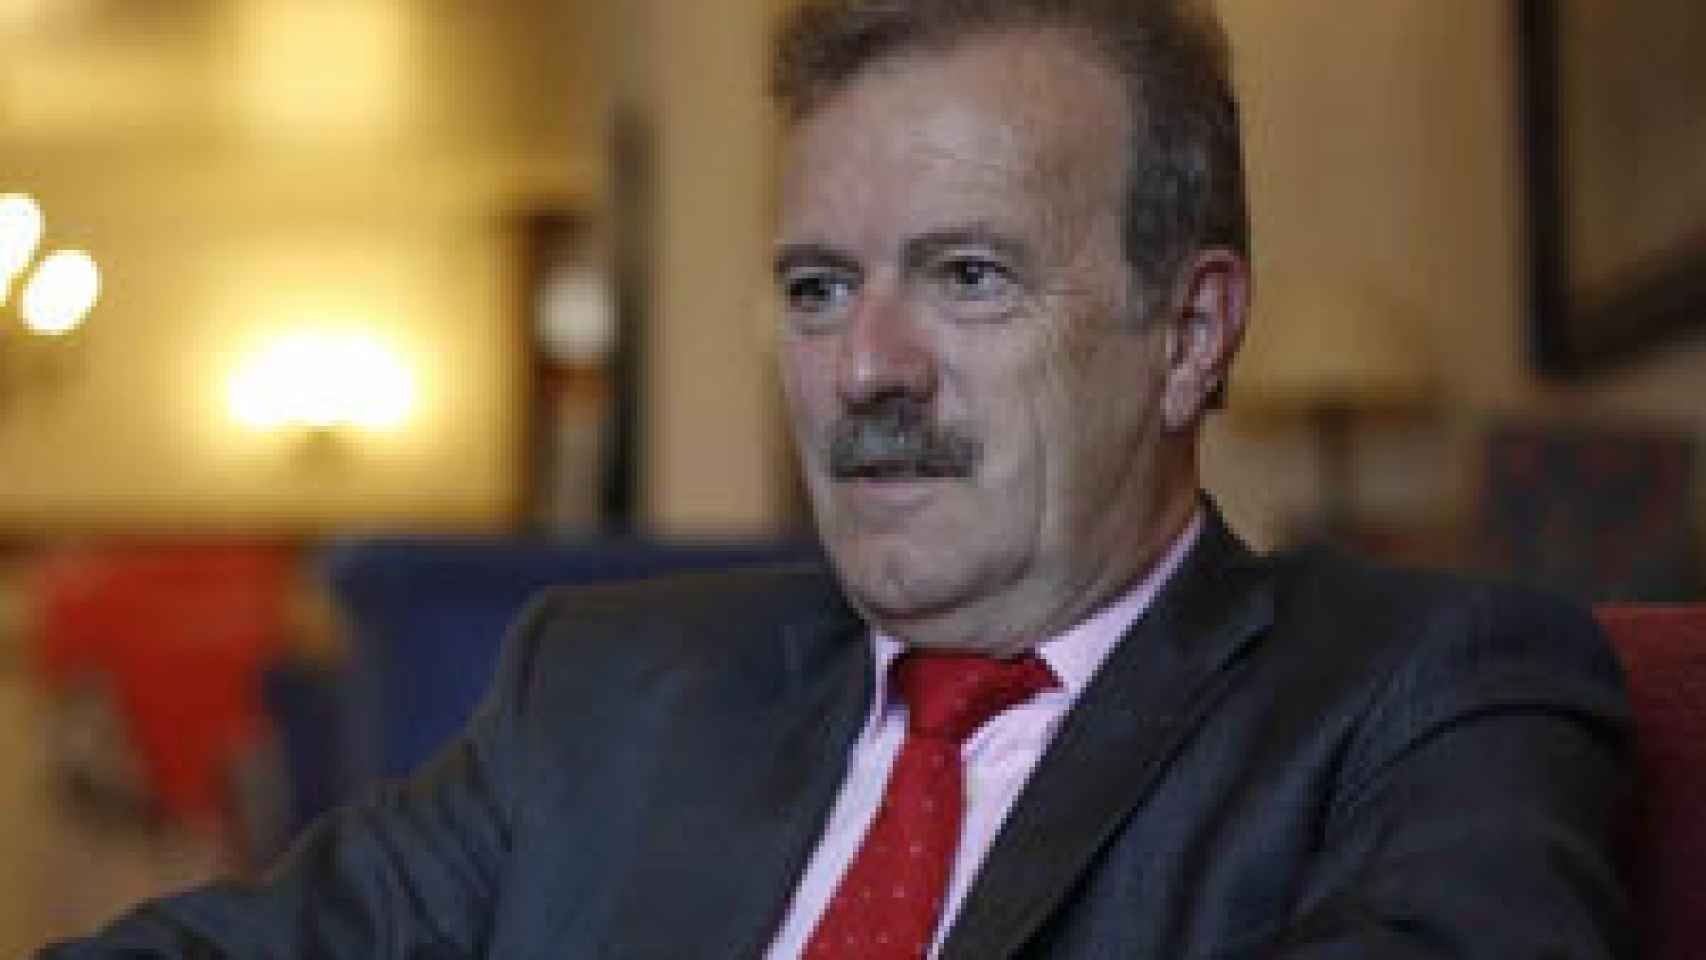 Image: Adolfo Suárez, el presidente inesperado de la Transición